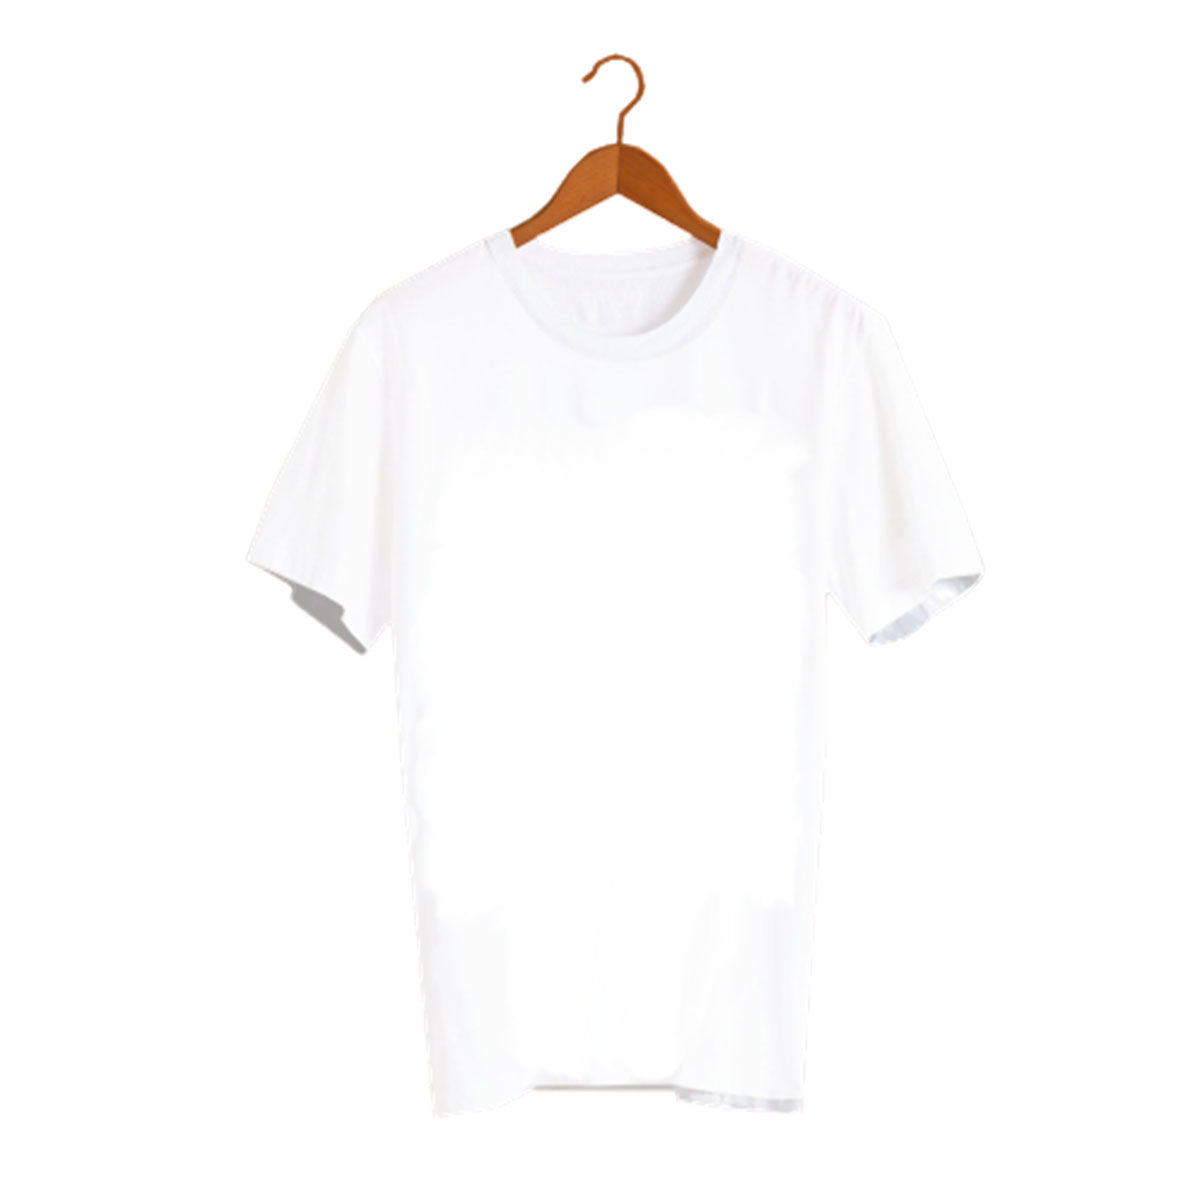 WHT1 Personalised Unisex Crew Neck Short Sleeve T Shirt White Clothing (One-sided )